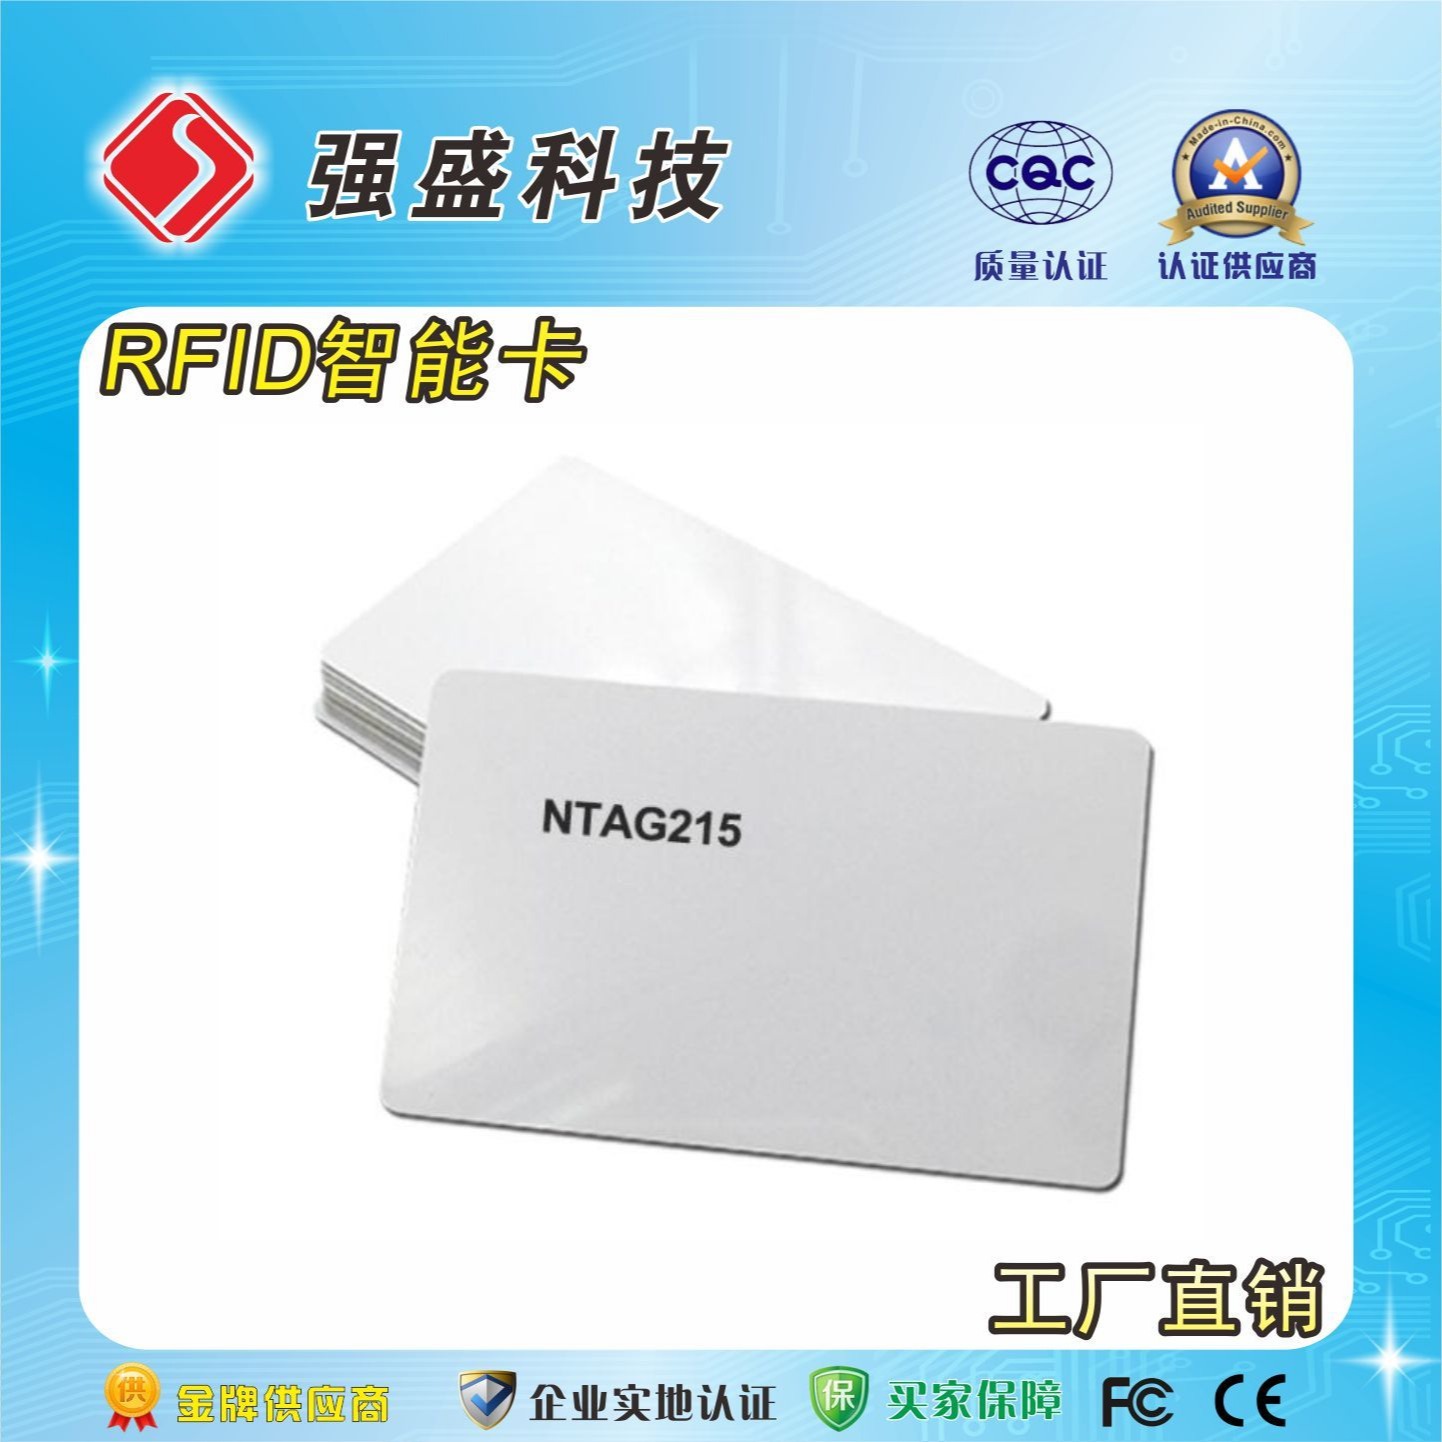 厂家定制NFC智能卡 NTAG215芯片白卡 nfc游戏卡印刷图片